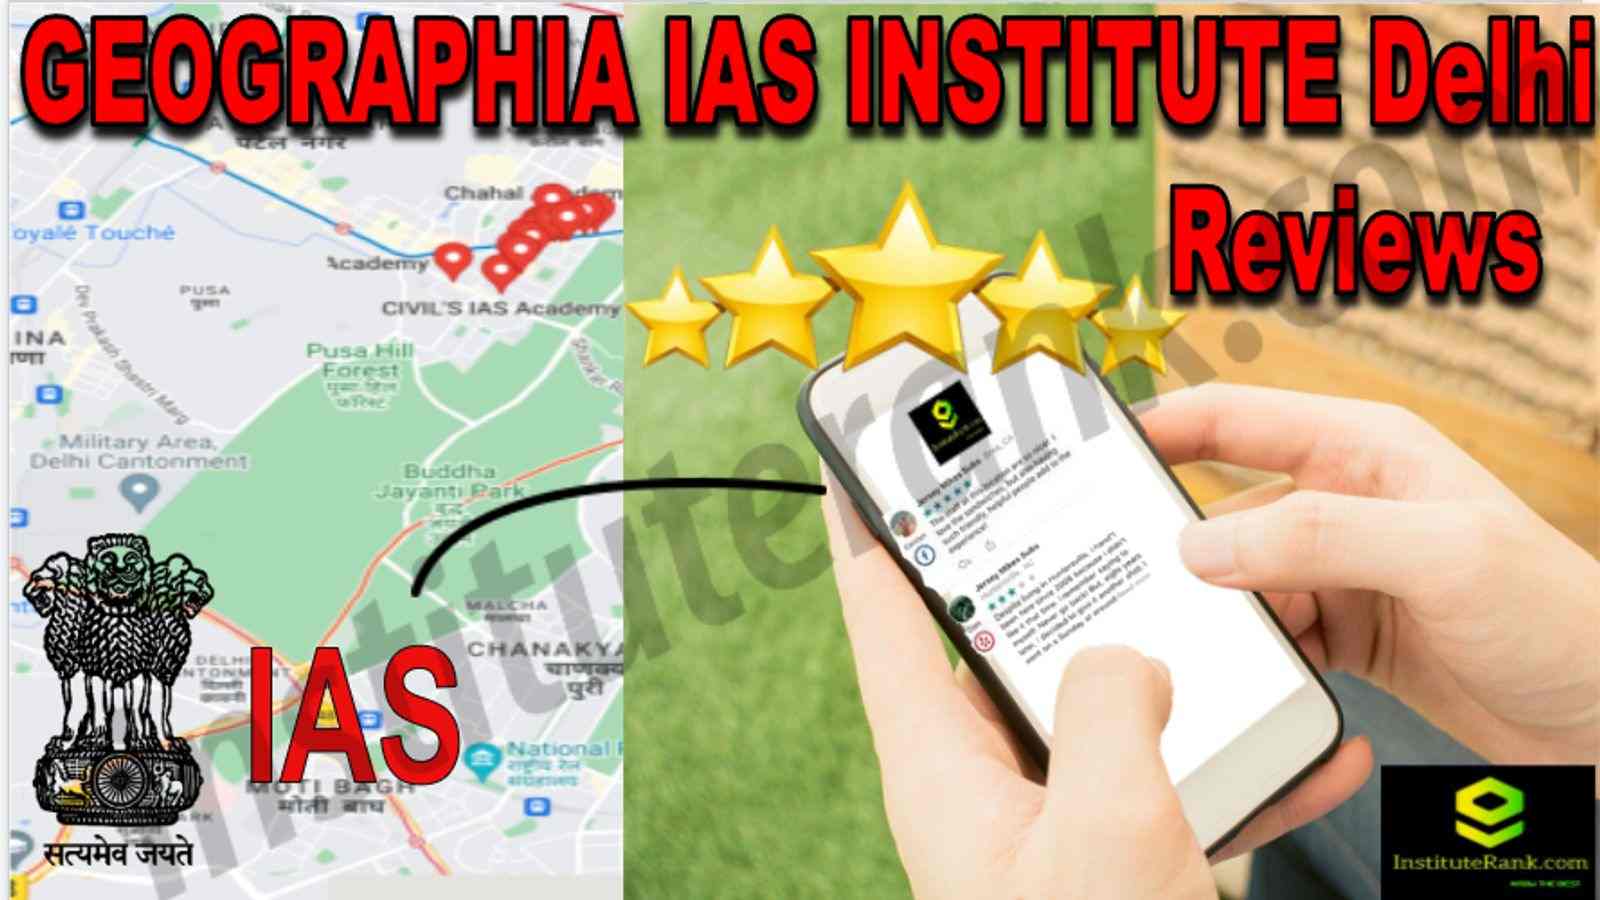 GEOGRAPHIA IAS INSTITUTE Delhi Reviews